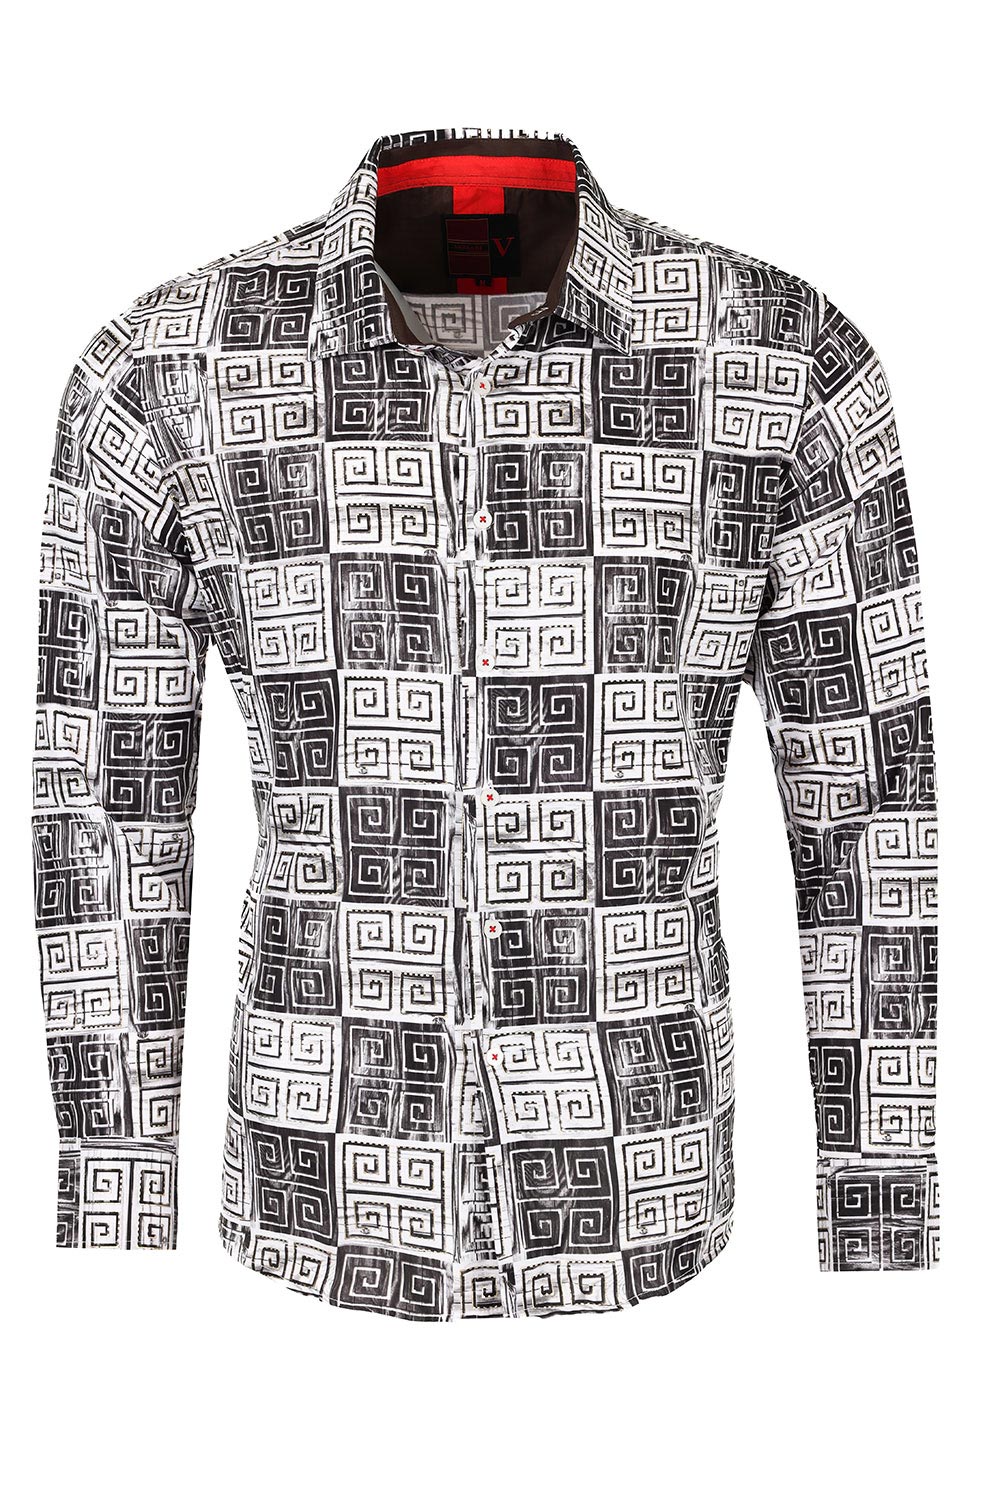 Vassari Men's Printed Multicolor Greek Key Pattern B Shirts VS125 Black white